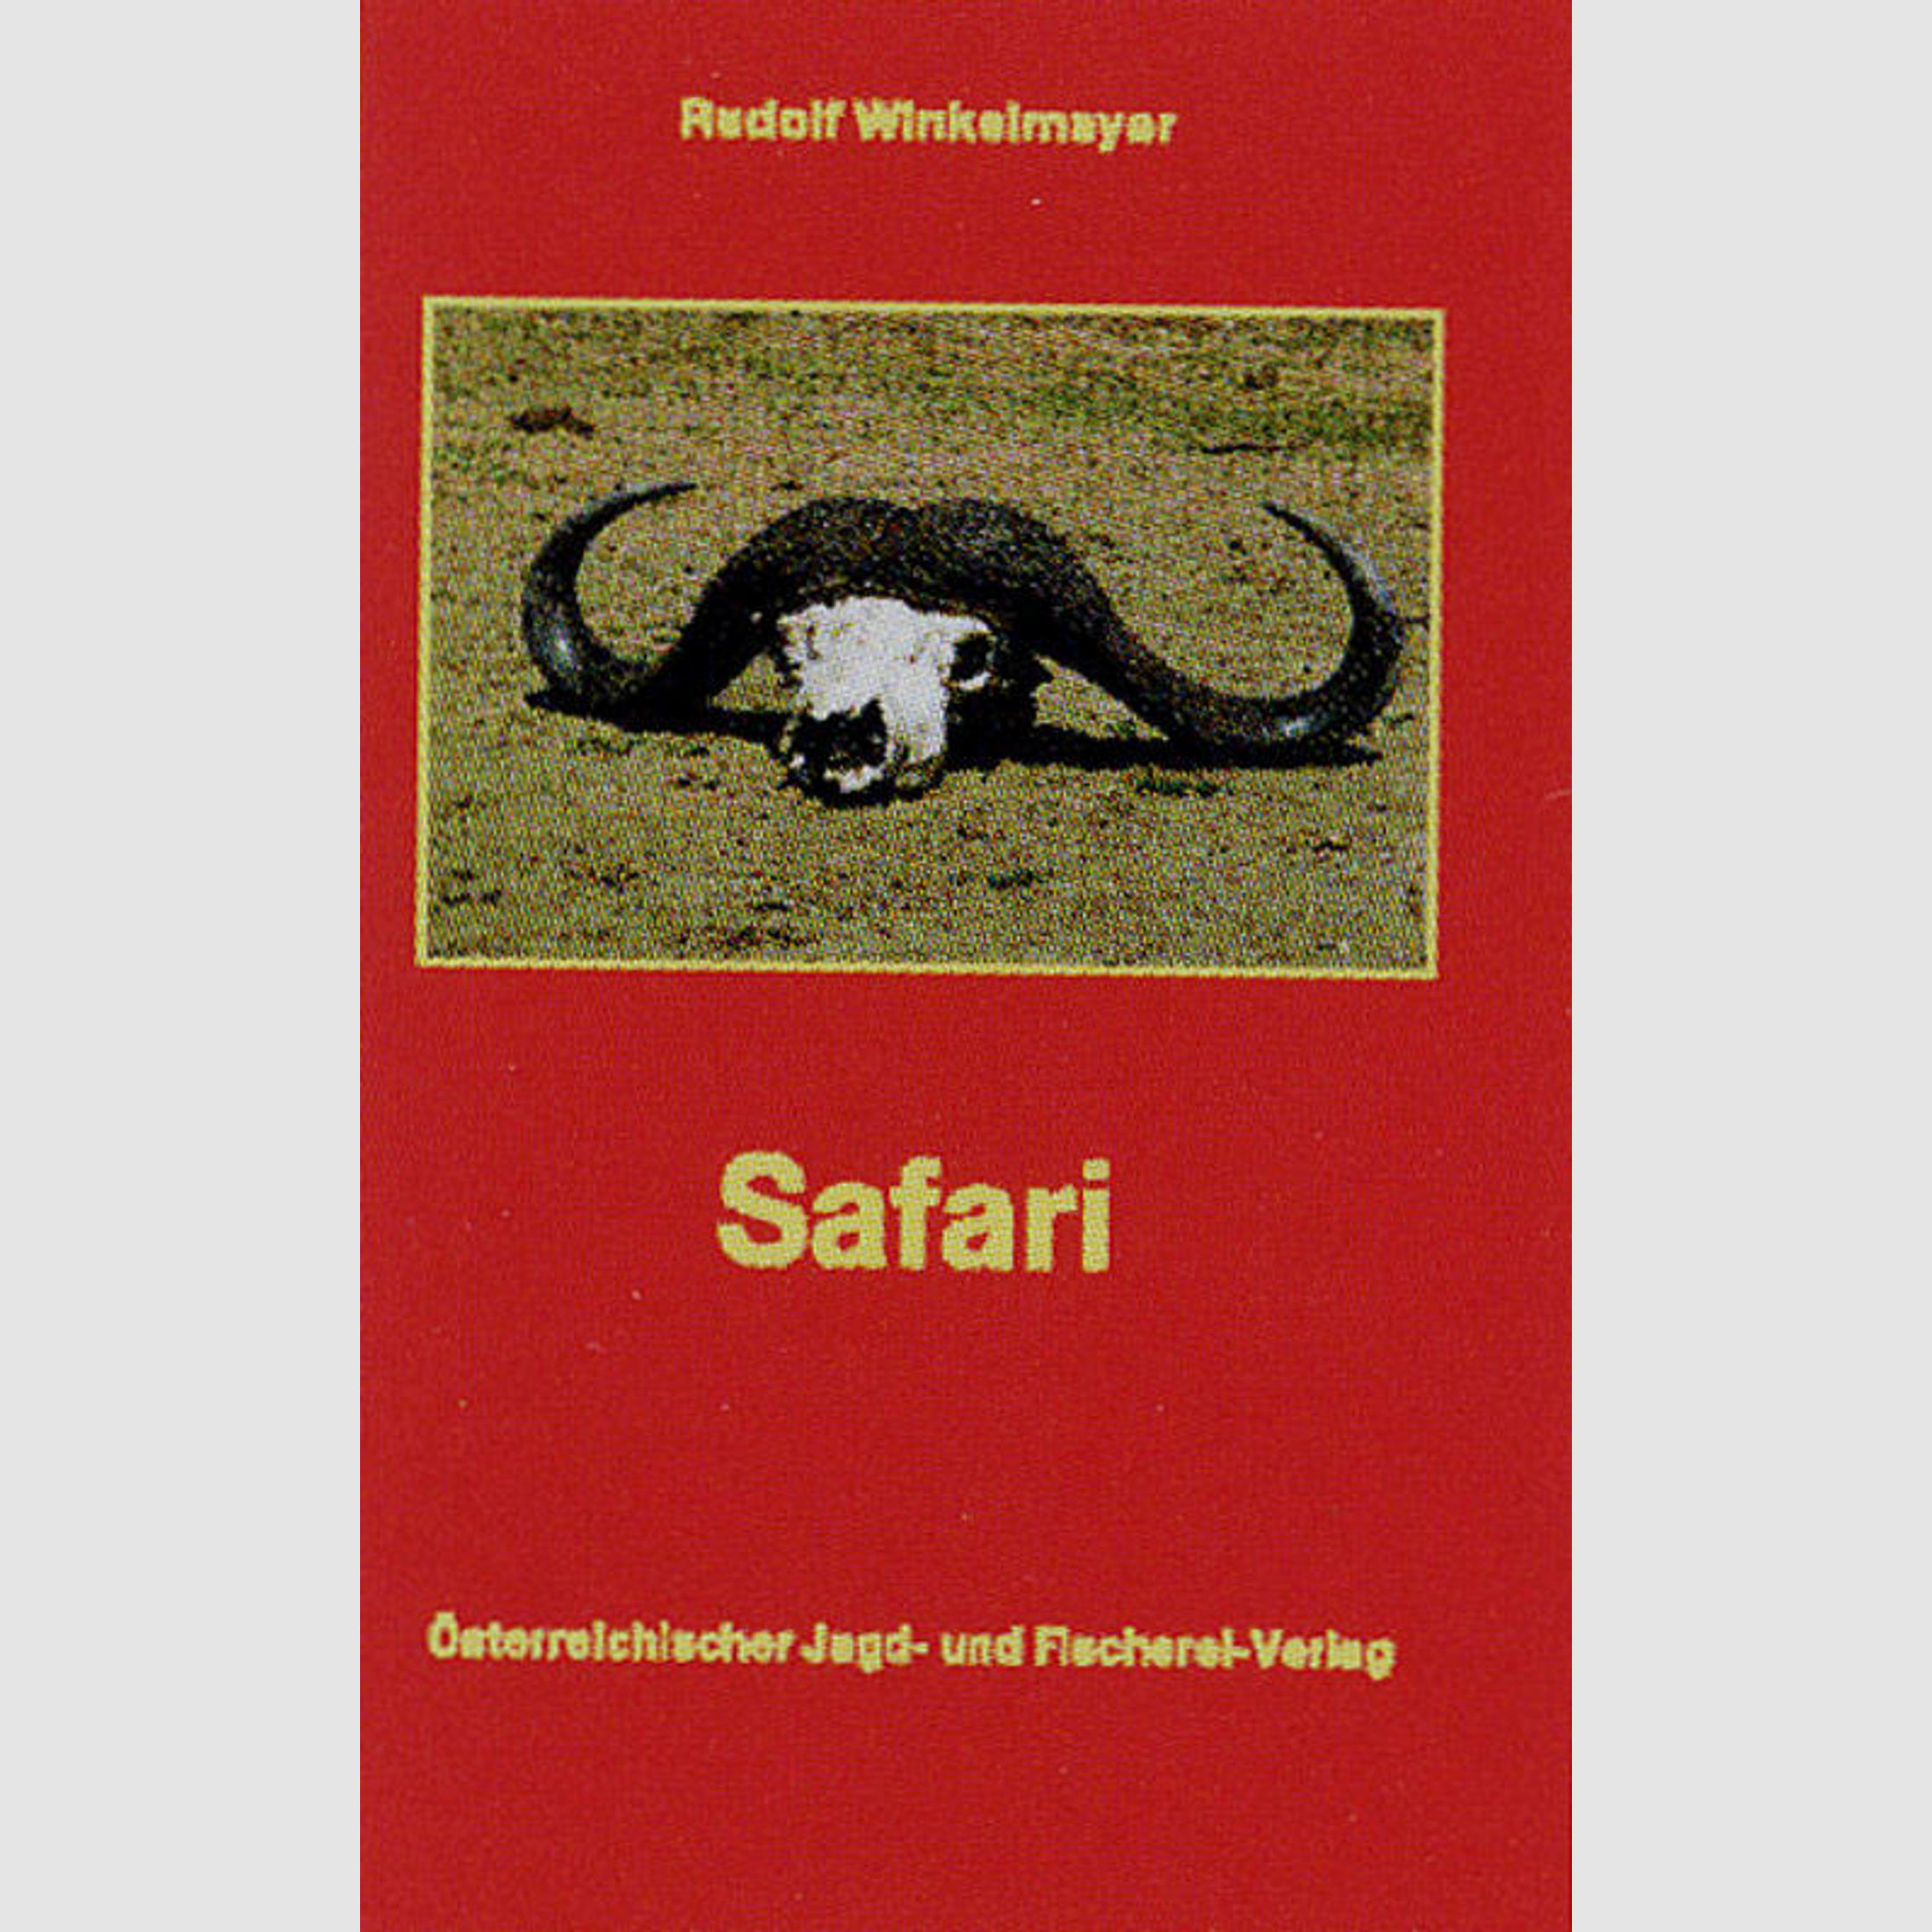 Winkelmayer - Safari